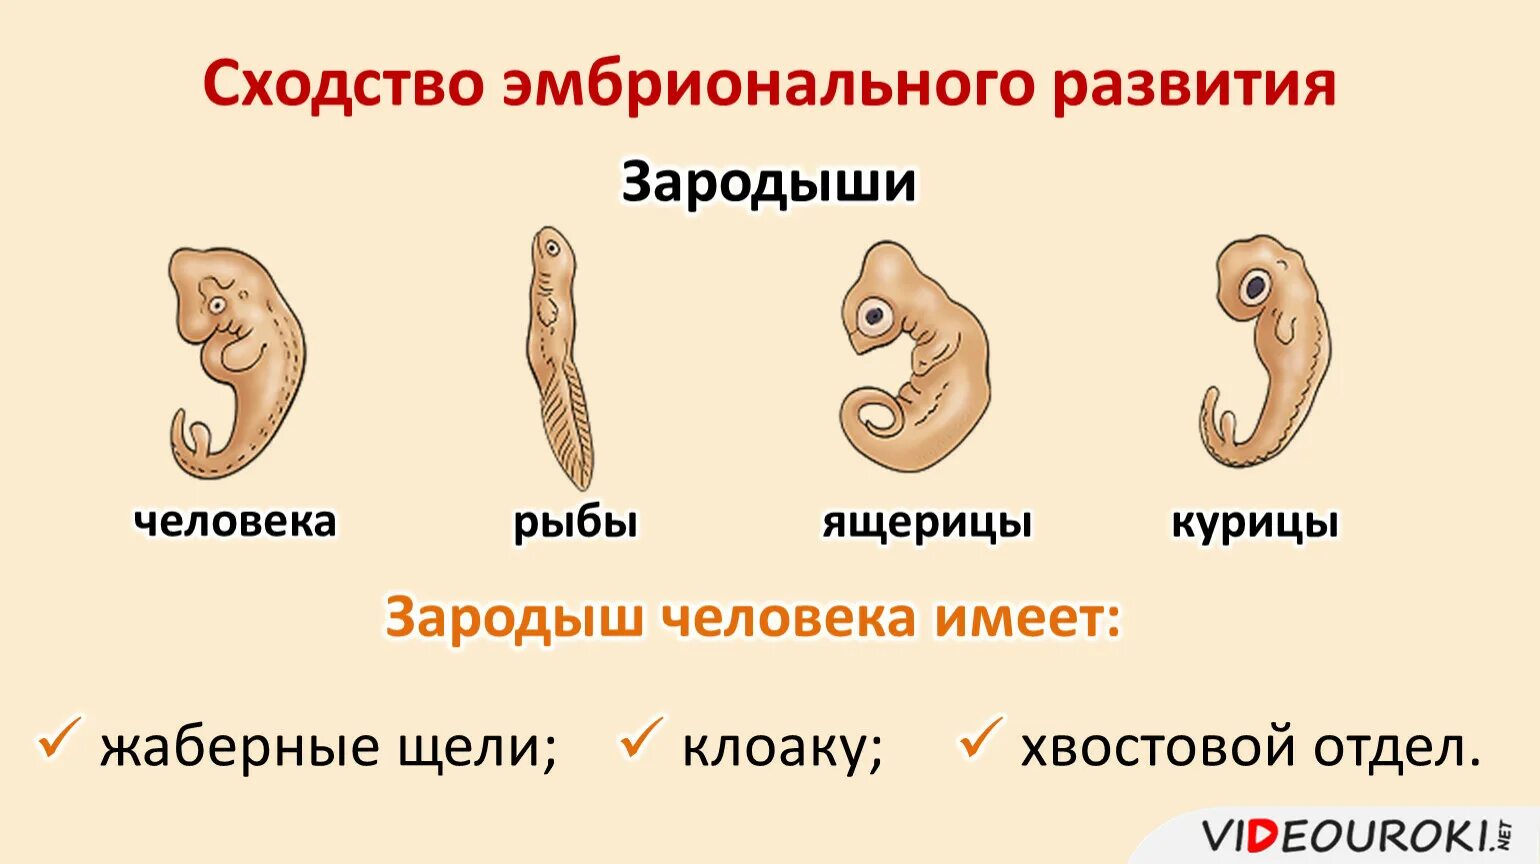 Стадия развития ящерицы. Сходство эмбрионального развития. Эмбриональное развитие человека. Сходство зародышей. Сходство стадий эмбрионального развития.